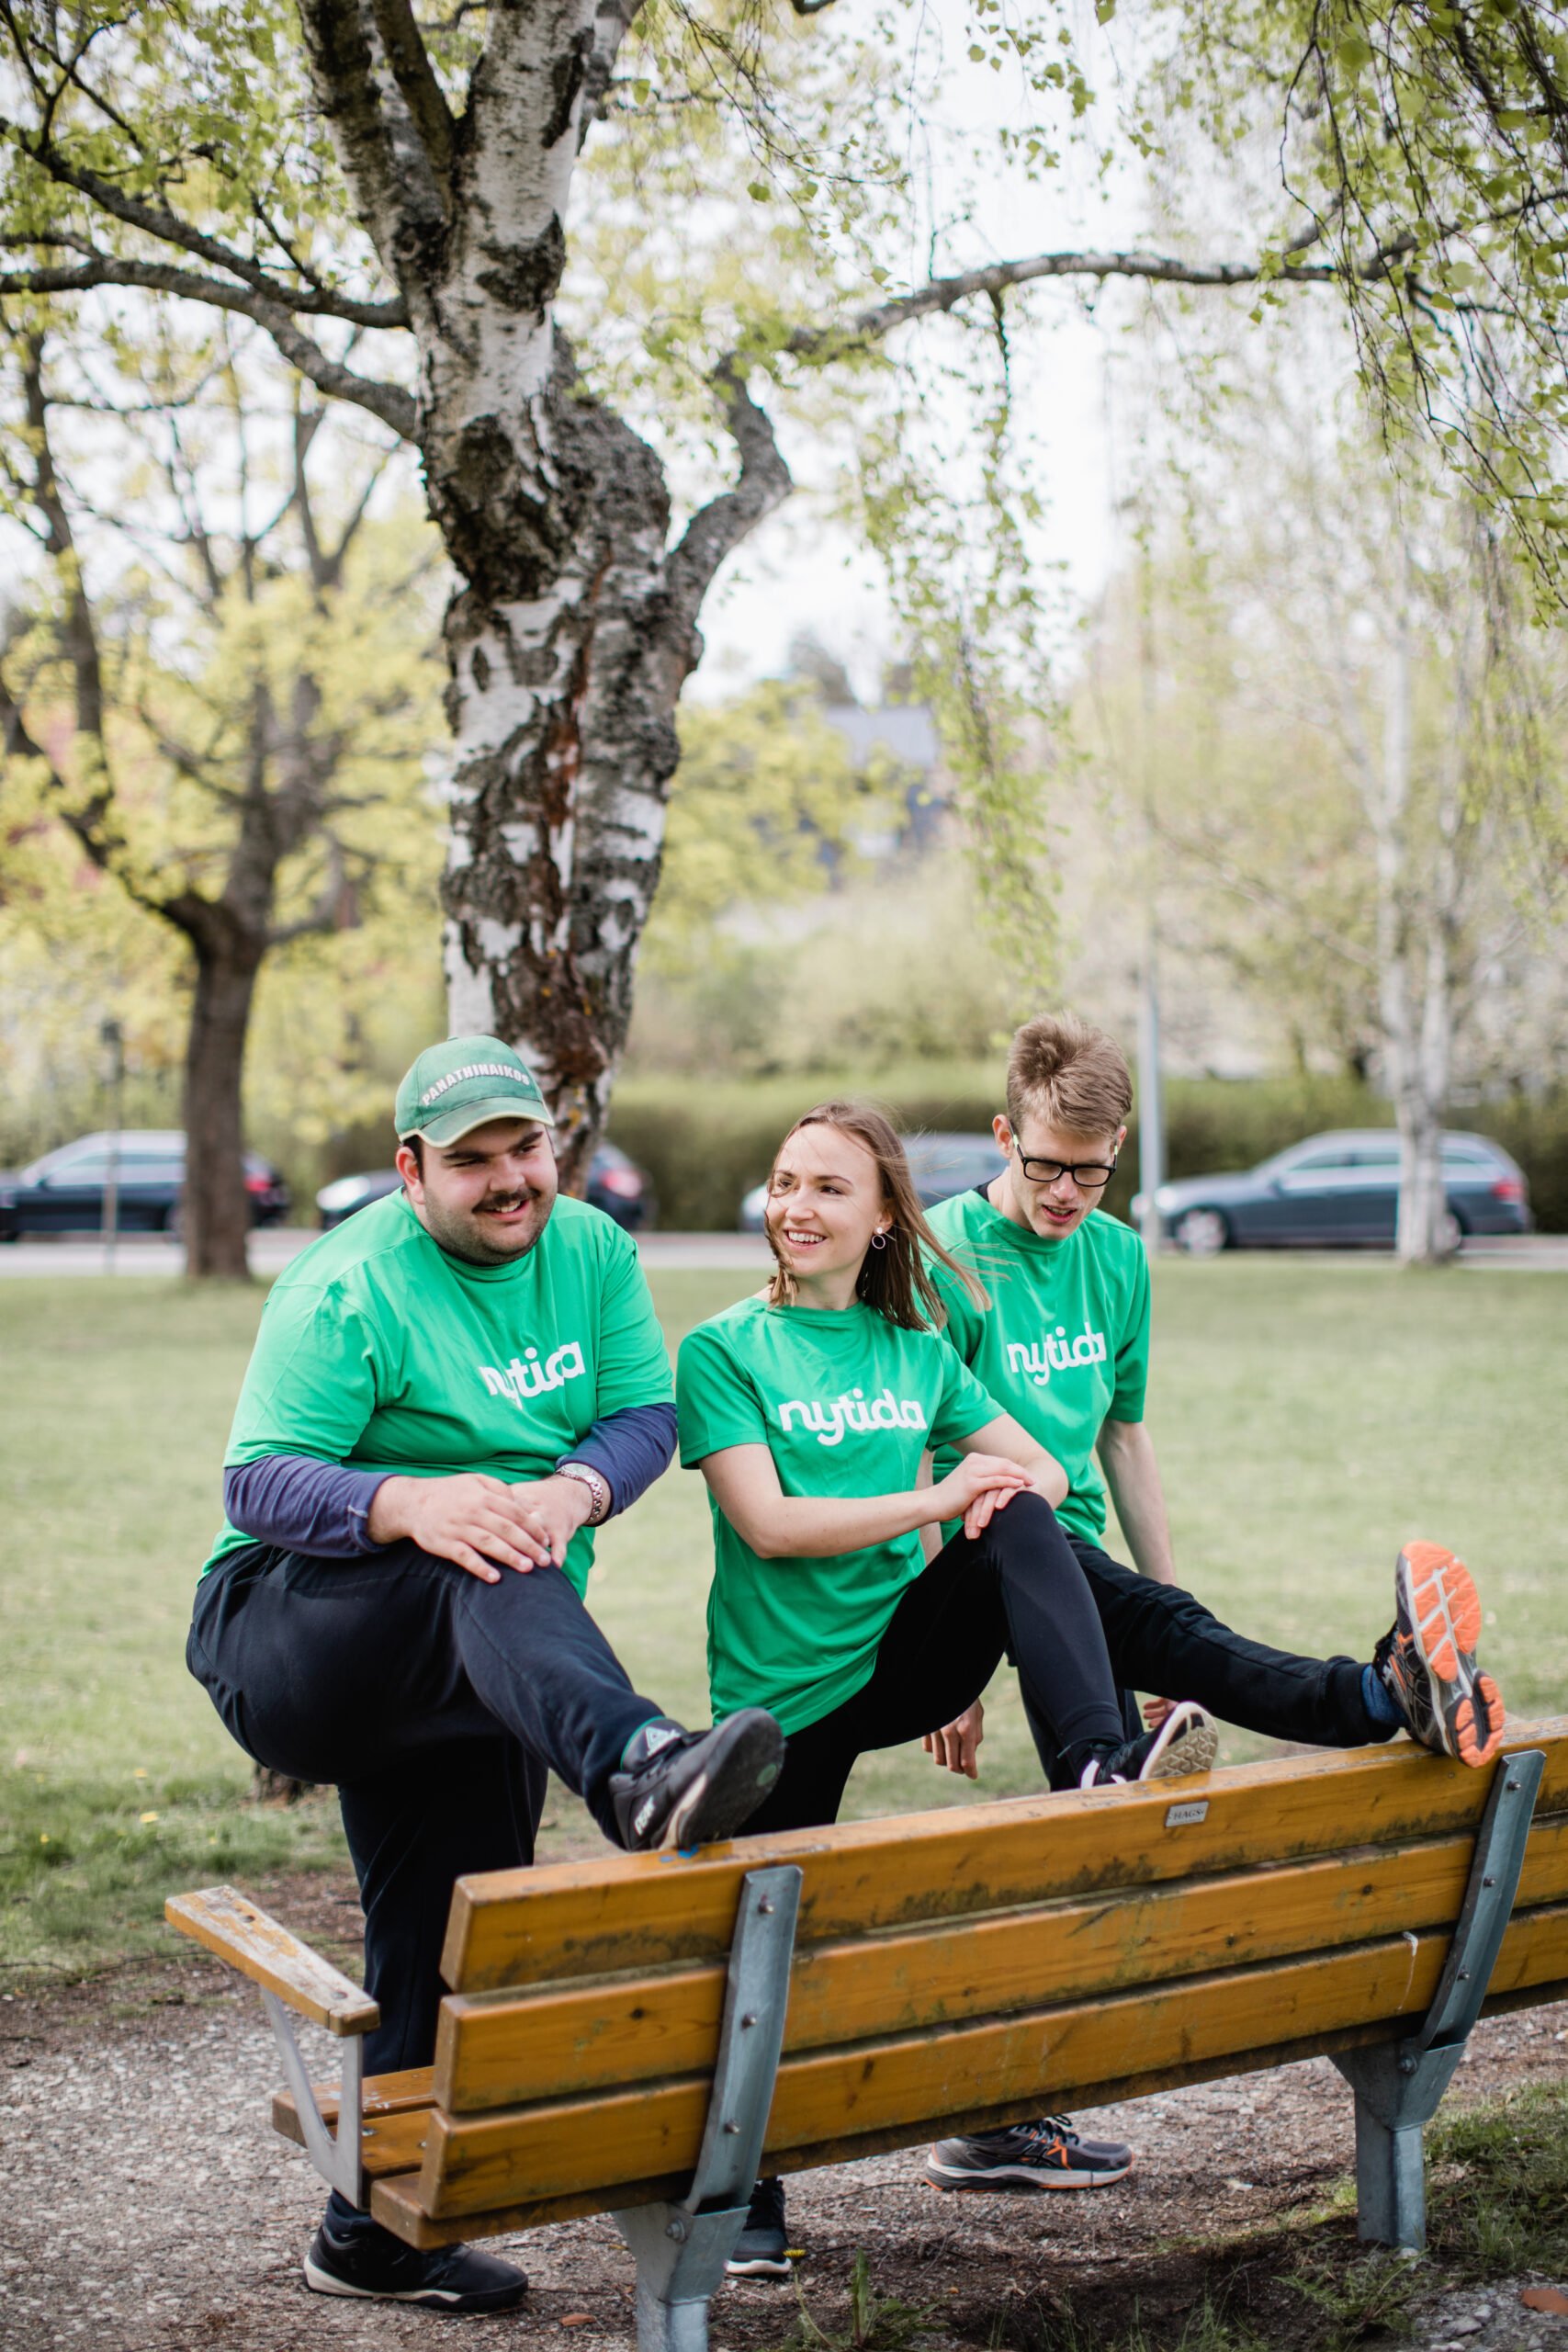 tre personer med gröna tröjor med text Nytida stretchar mot parkbänk